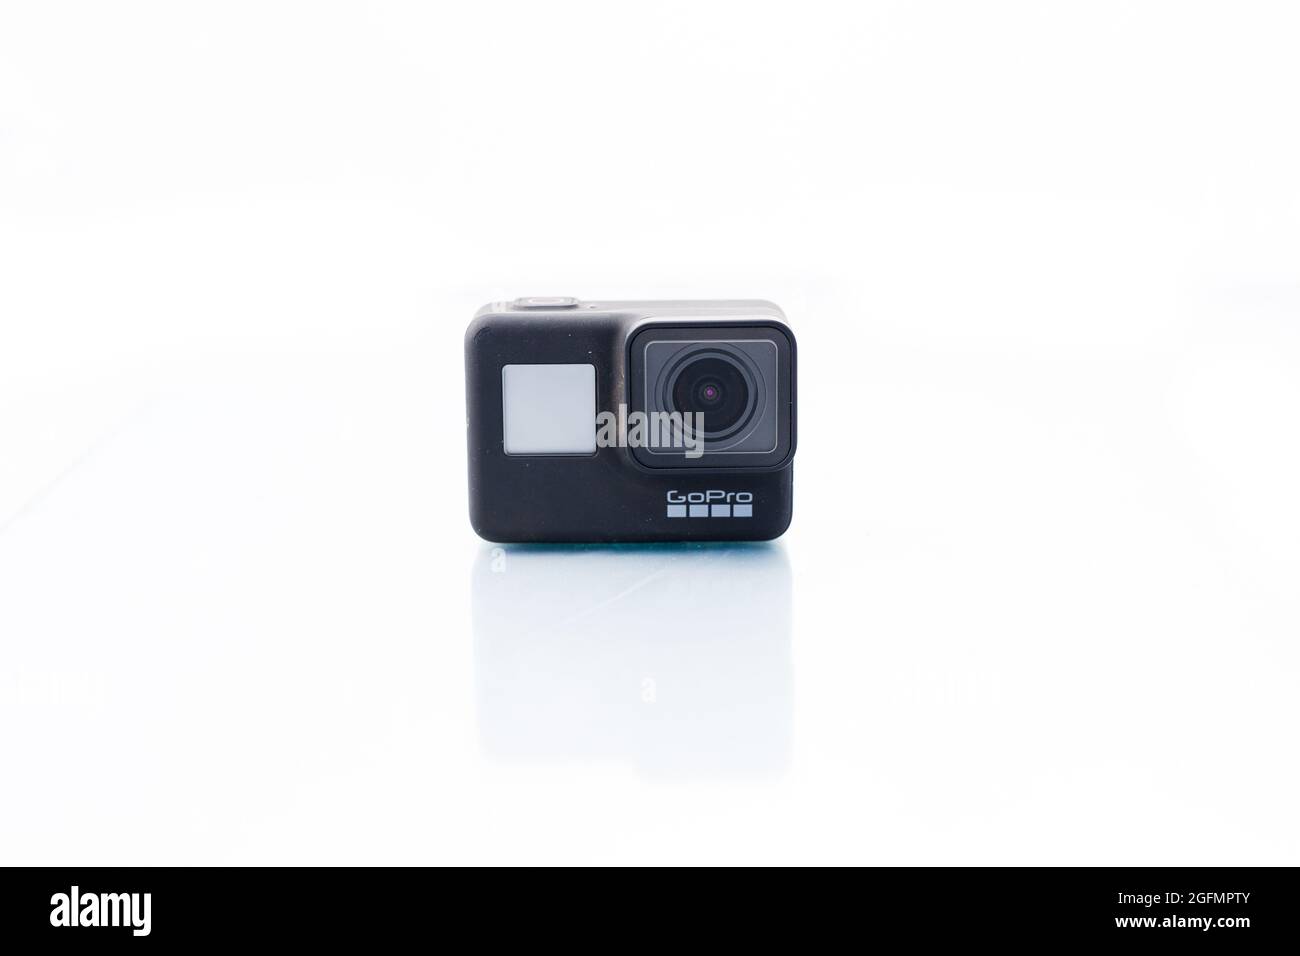 Suffolk, UK Juni 01 2020: GoPro Hero 7 Black Action Kamera vor einem klaren, weißen Hintergrund. GoPro ist eine kleine Action-Kamera häufig verwendet i Stockfoto